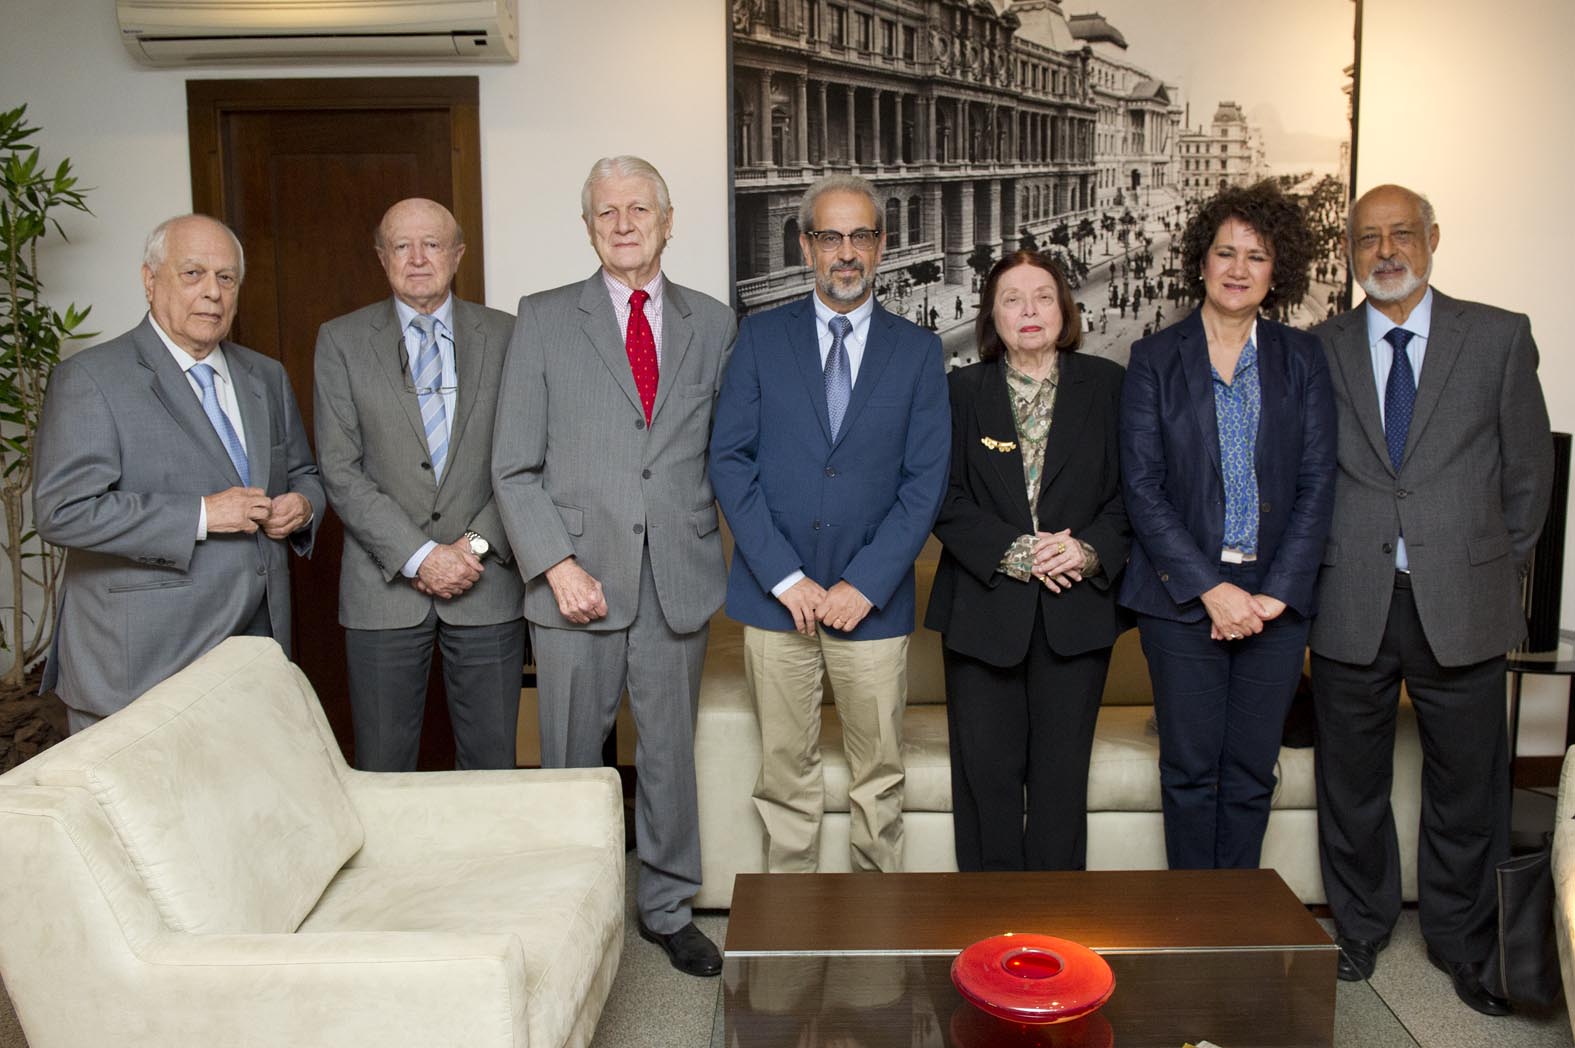 La Universidad de Salamanca y la Academia Brasileña de Letras potenciarán la cooperación académica y cultural entre ambos países